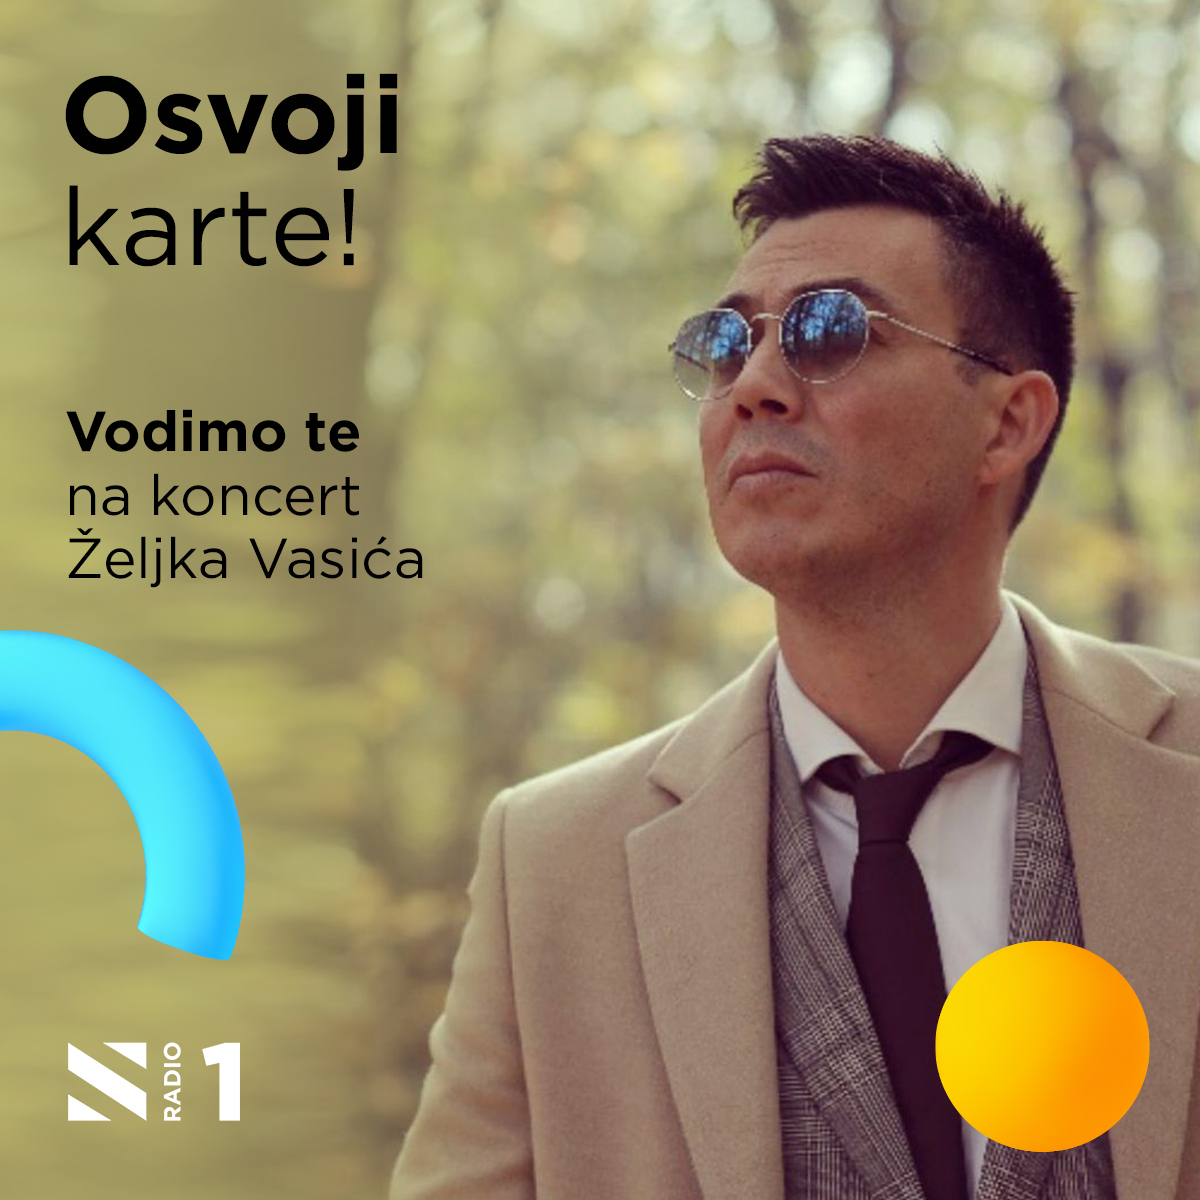 Vodimo te na koncert Željka Vasića!